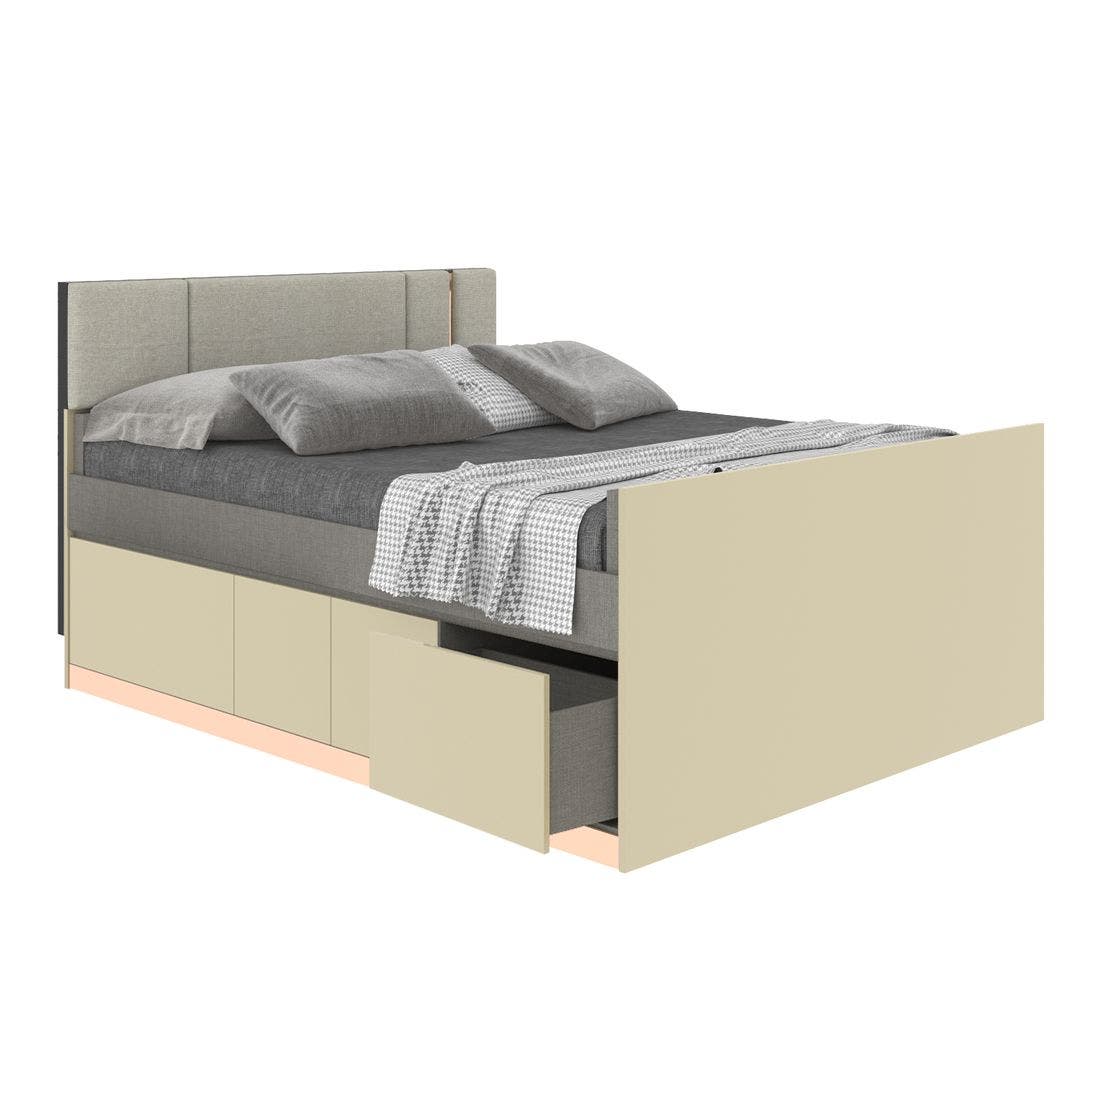 19203777-blisz-furniture-bedroom-furniture-beds-06